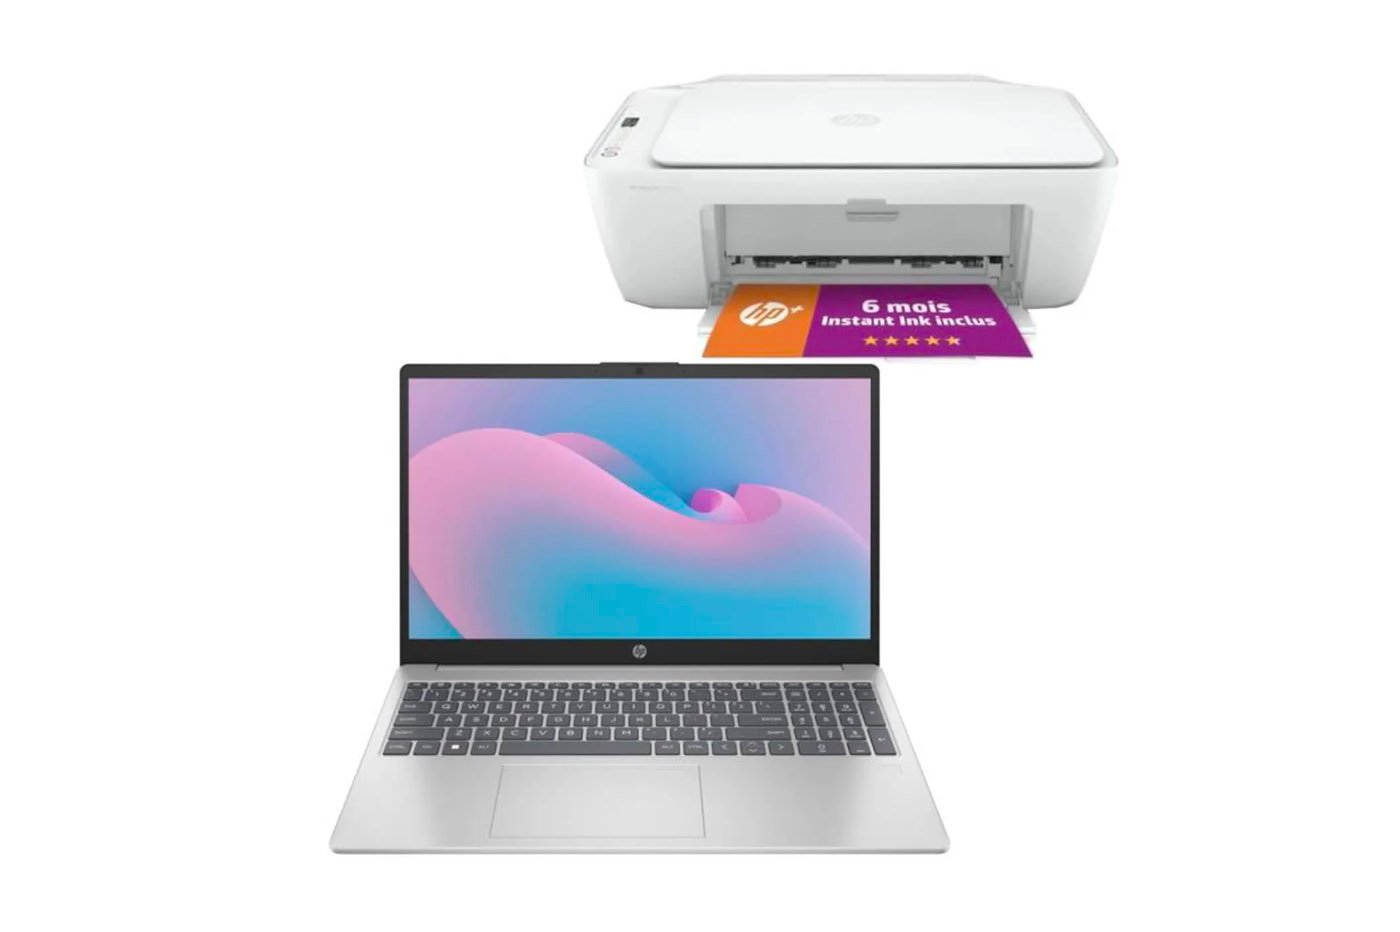 Achetez ce PC portable HP, l'imprimante DeskJet 2710e est offerte !